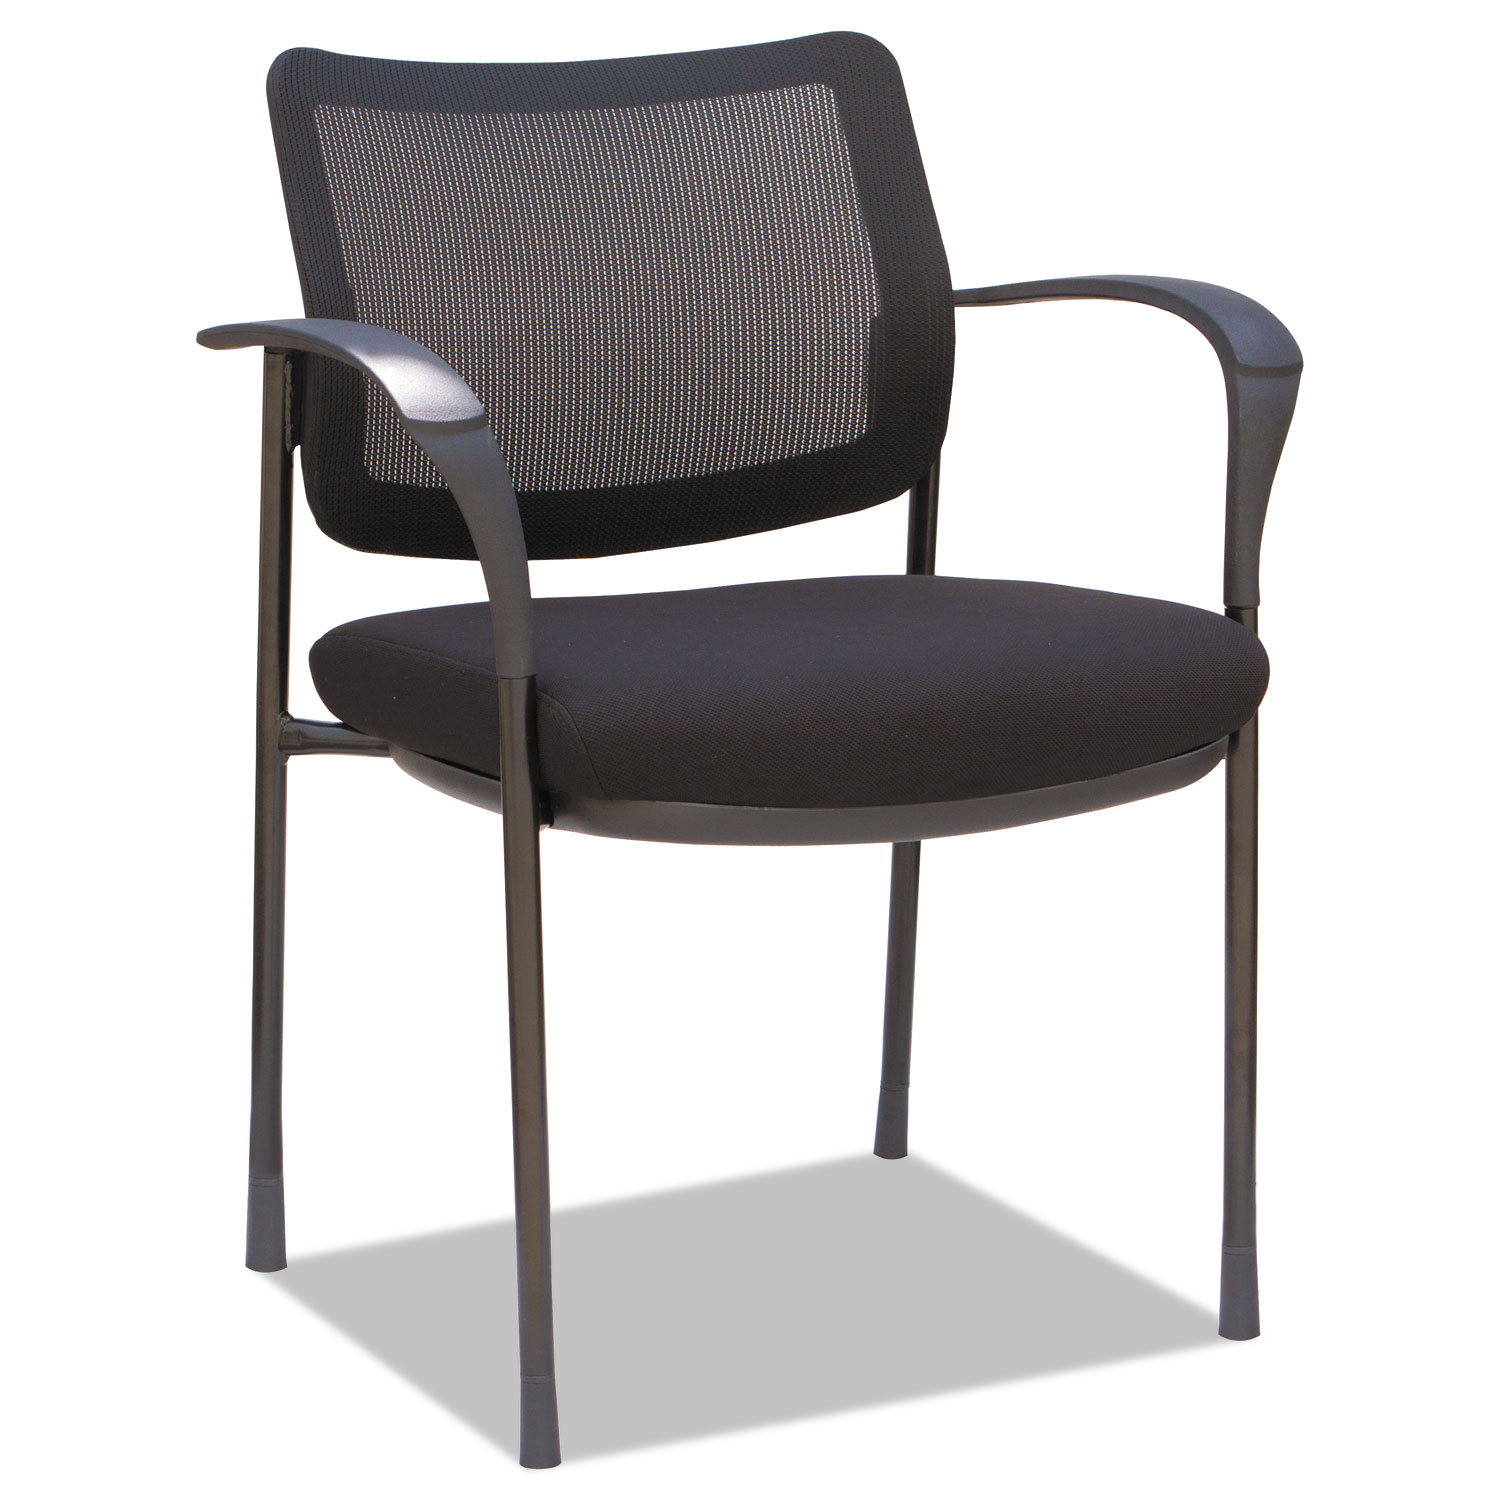  Alera ALEIV4314A Alera IV Series Guest Chairs, 25.19'' x 23.62'' x 32.28'', Black Seat/Black Back, Black Base, 2/Carton (ALEIV4314A) 